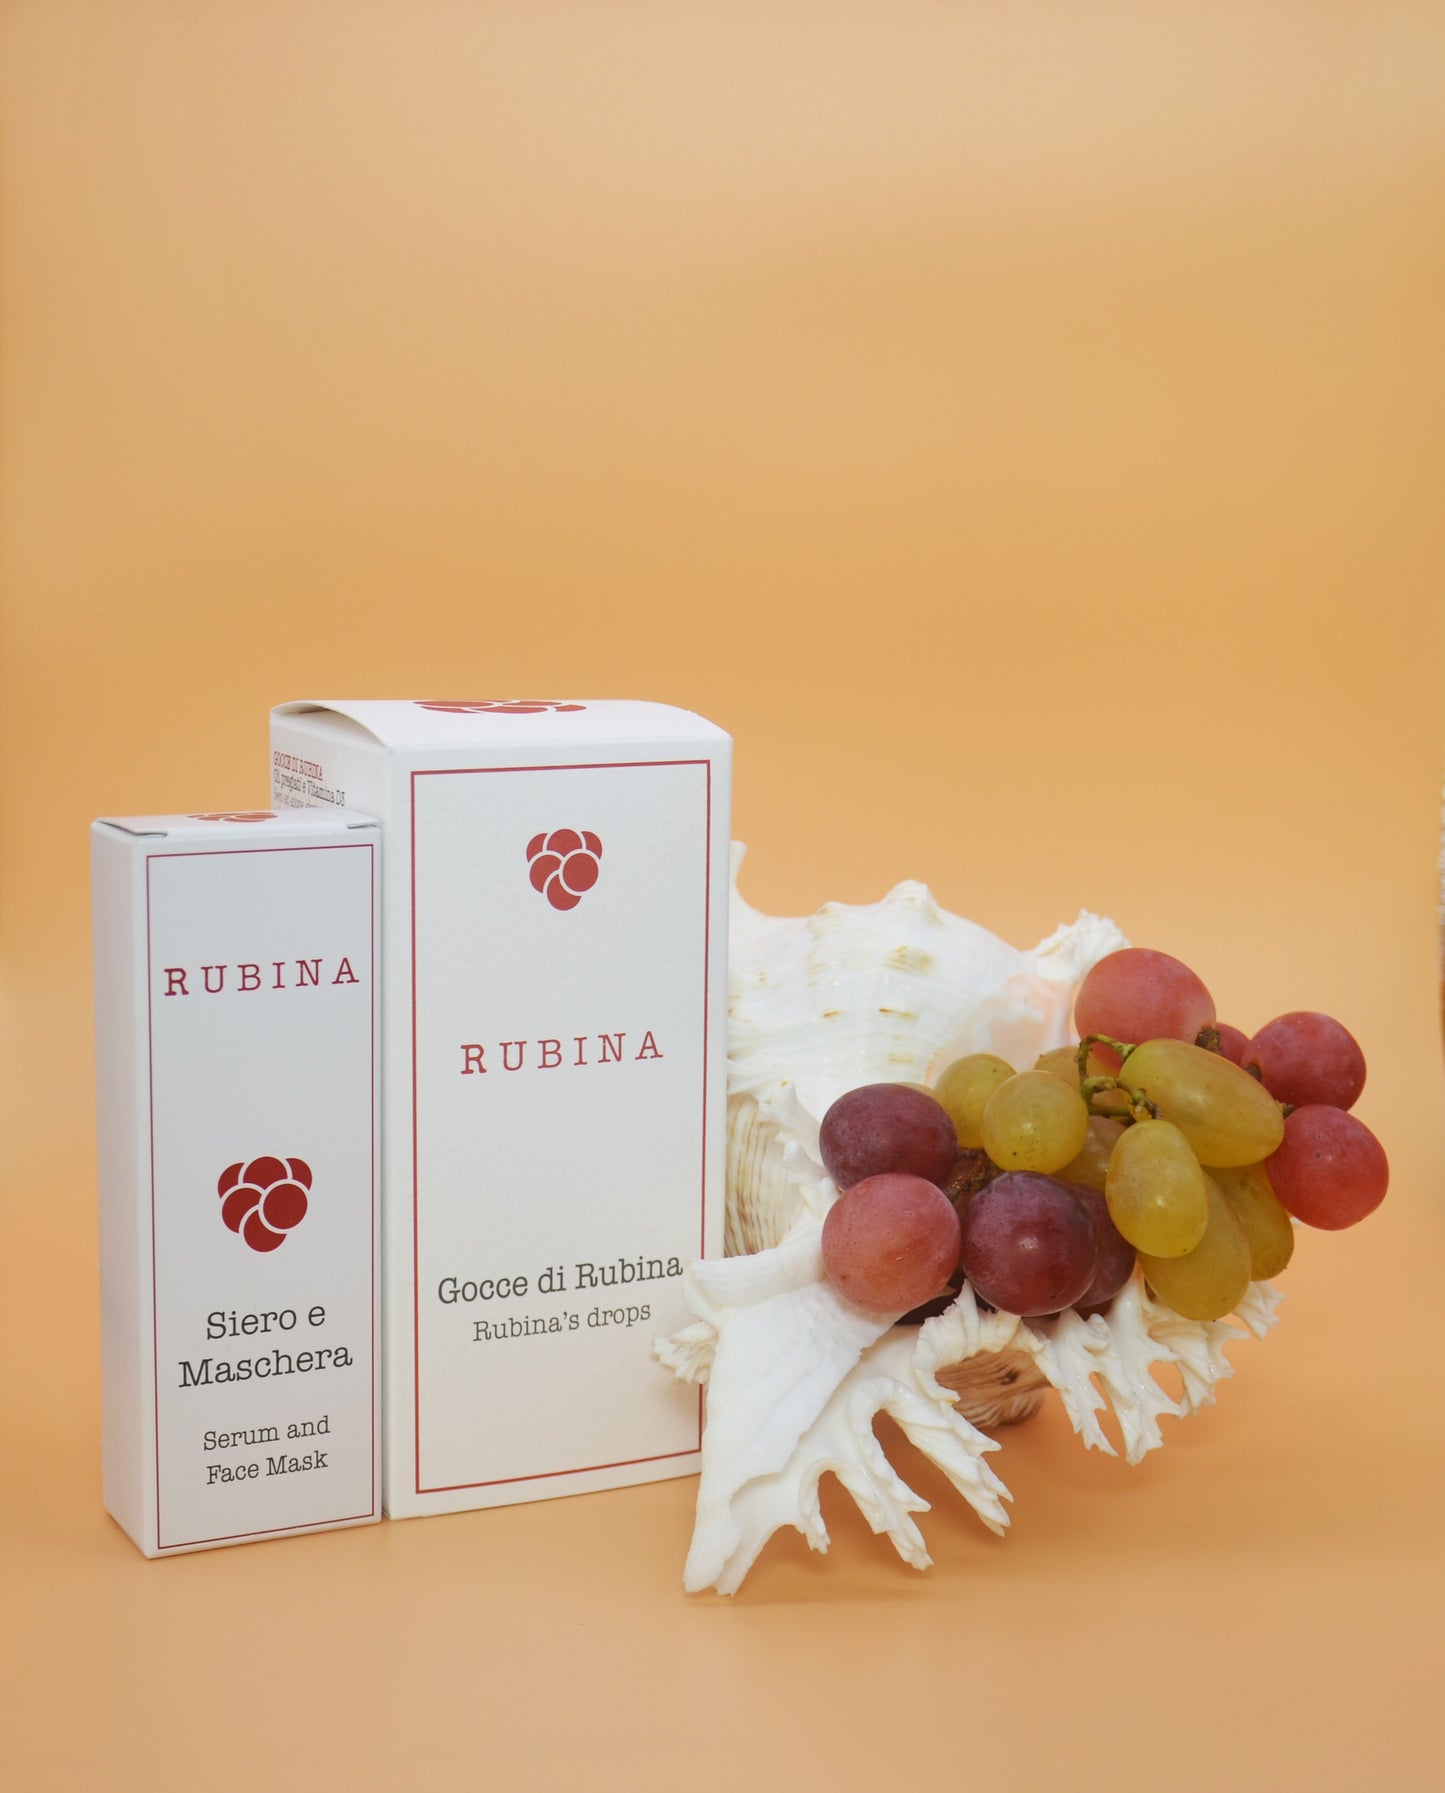 Набор Rubina "PERFEZIONE" - 2 продукта на 6 потребностей (эссенция, маска, сыворотка для ТЕЛА и ЛИЦО/ГЛАЗА). Мелкосерийное производство. Сделано в Италии. Драгоценные масла, экстракт винограда, огурец